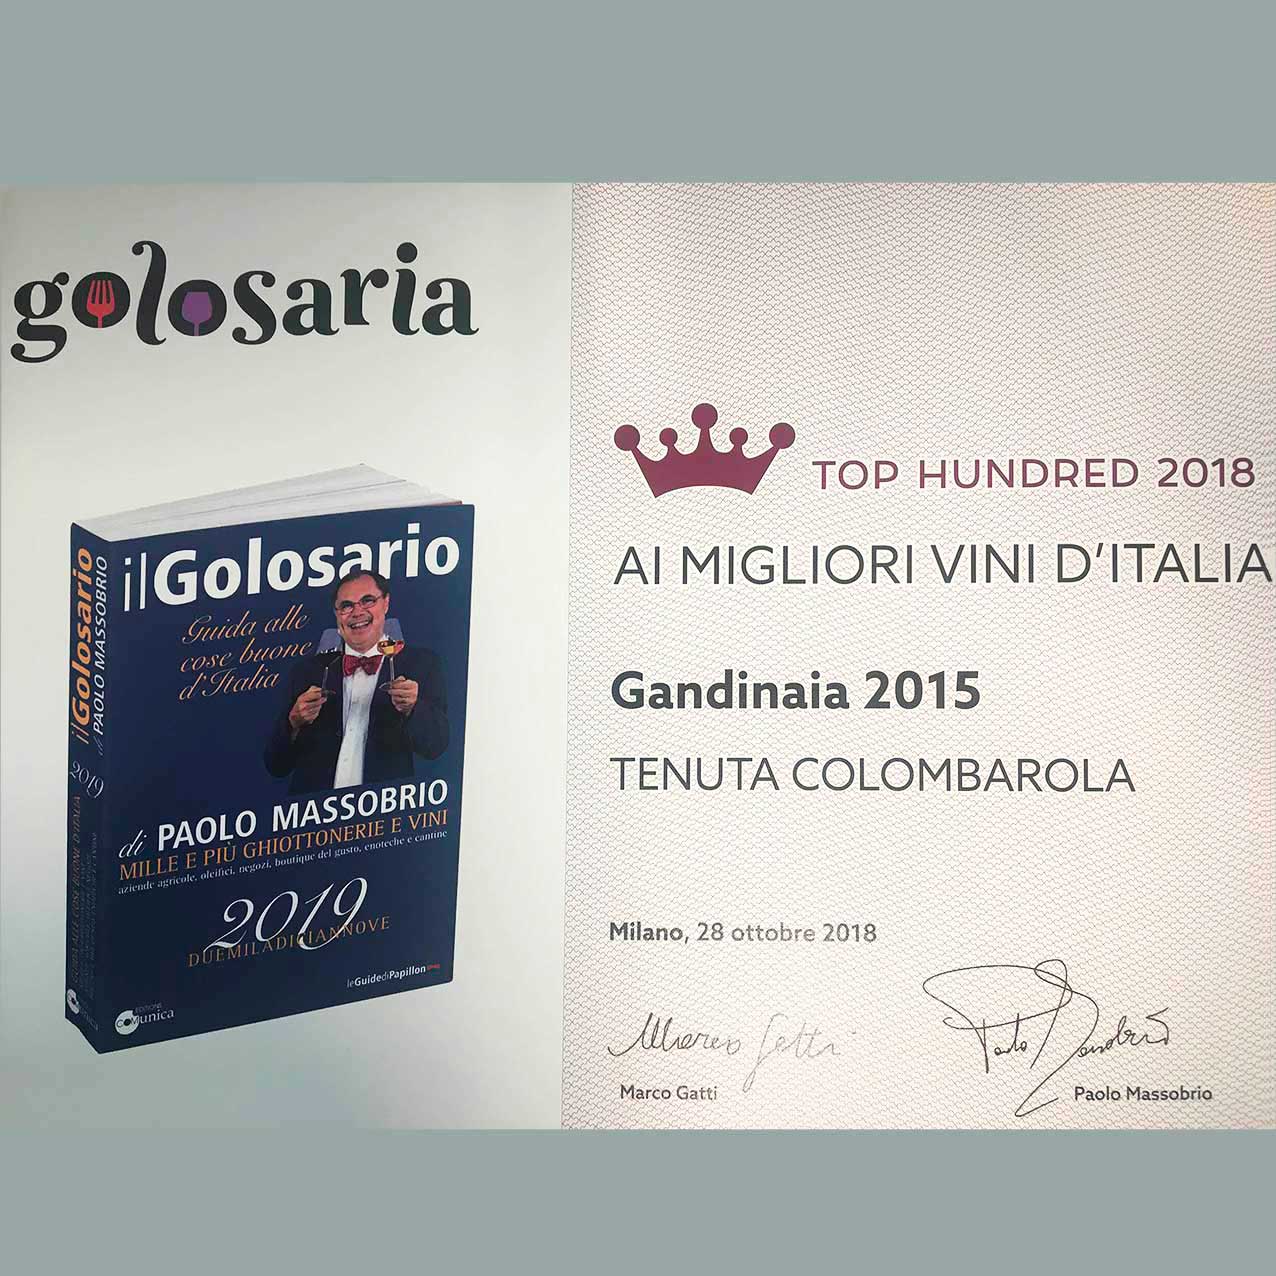 Premio Golosaria conferito nel 2018 a Milano al vino Rosso Gandinaia dell'annata 2015.